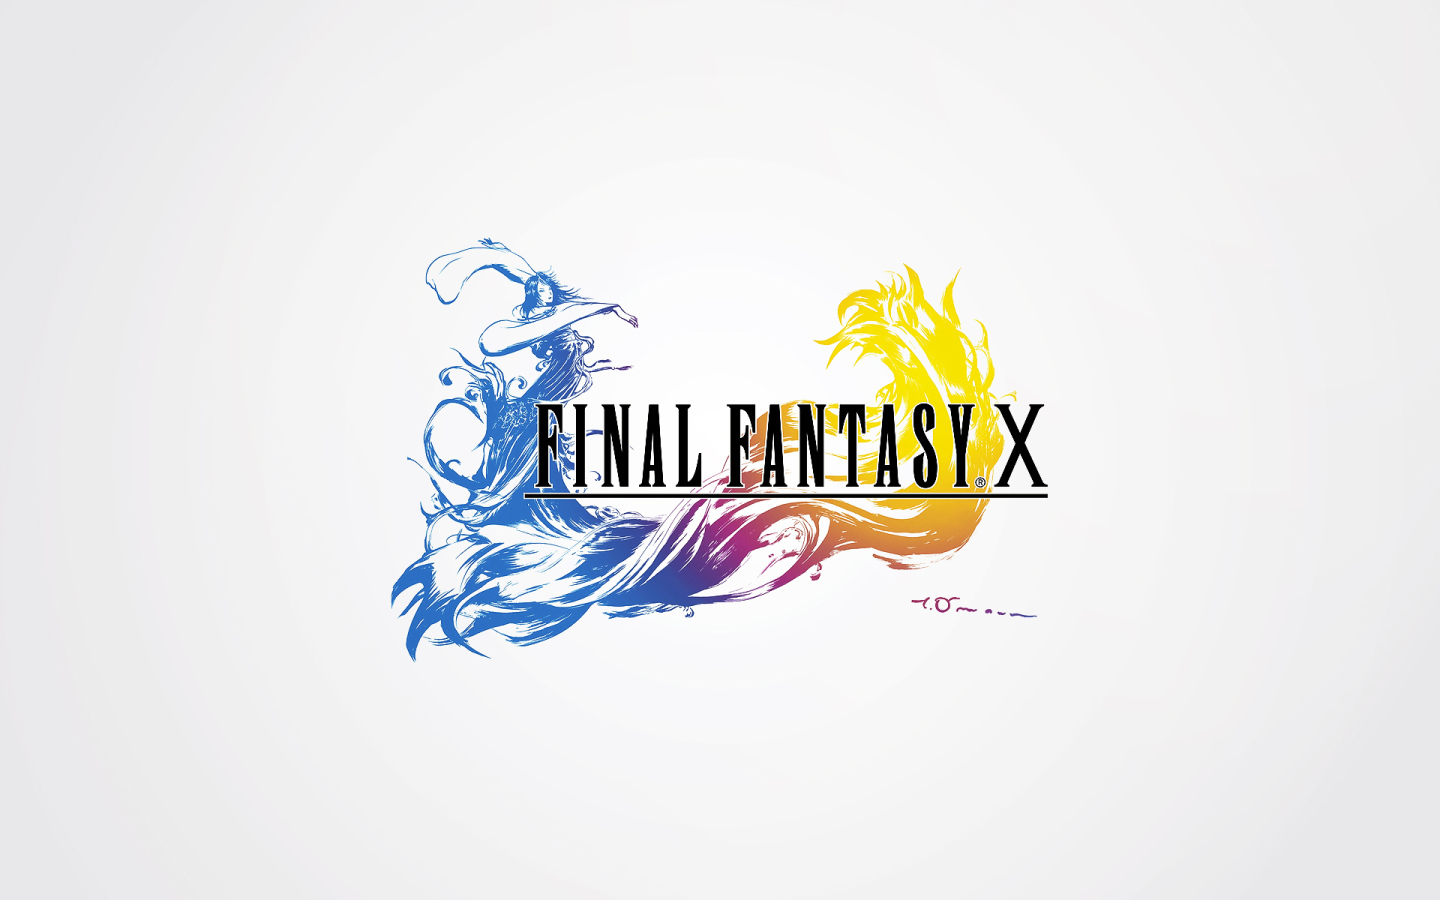 Заставка игры на белом фоне Final Fantasy xv